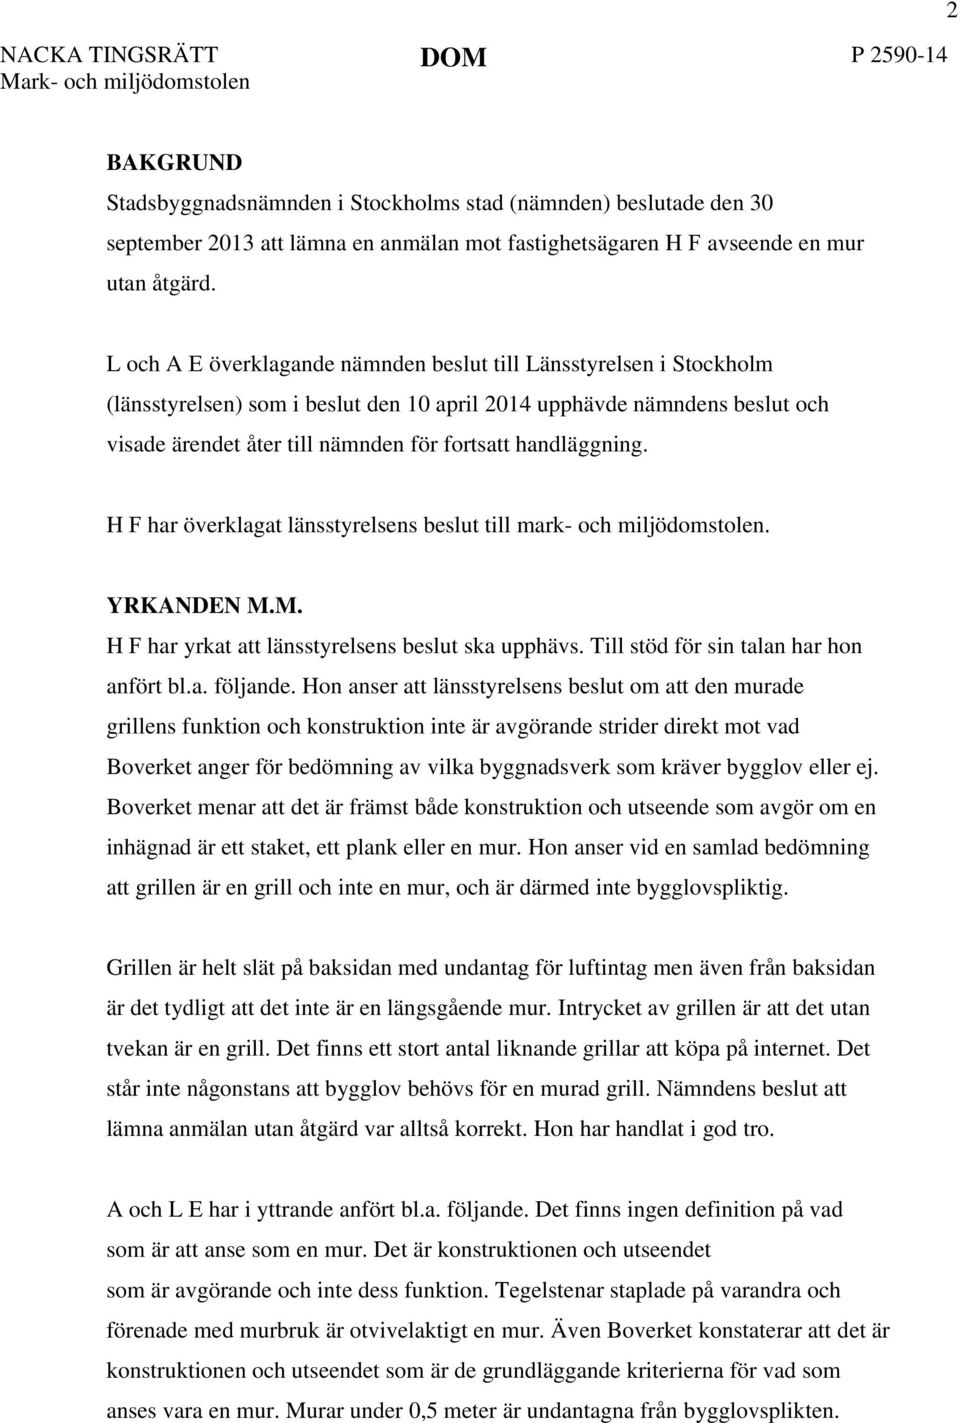 L och A E överklagande nämnden beslut till Länsstyrelsen i Stockholm (länsstyrelsen) som i beslut den 10 april 2014 upphävde nämndens beslut och visade ärendet åter till nämnden för fortsatt